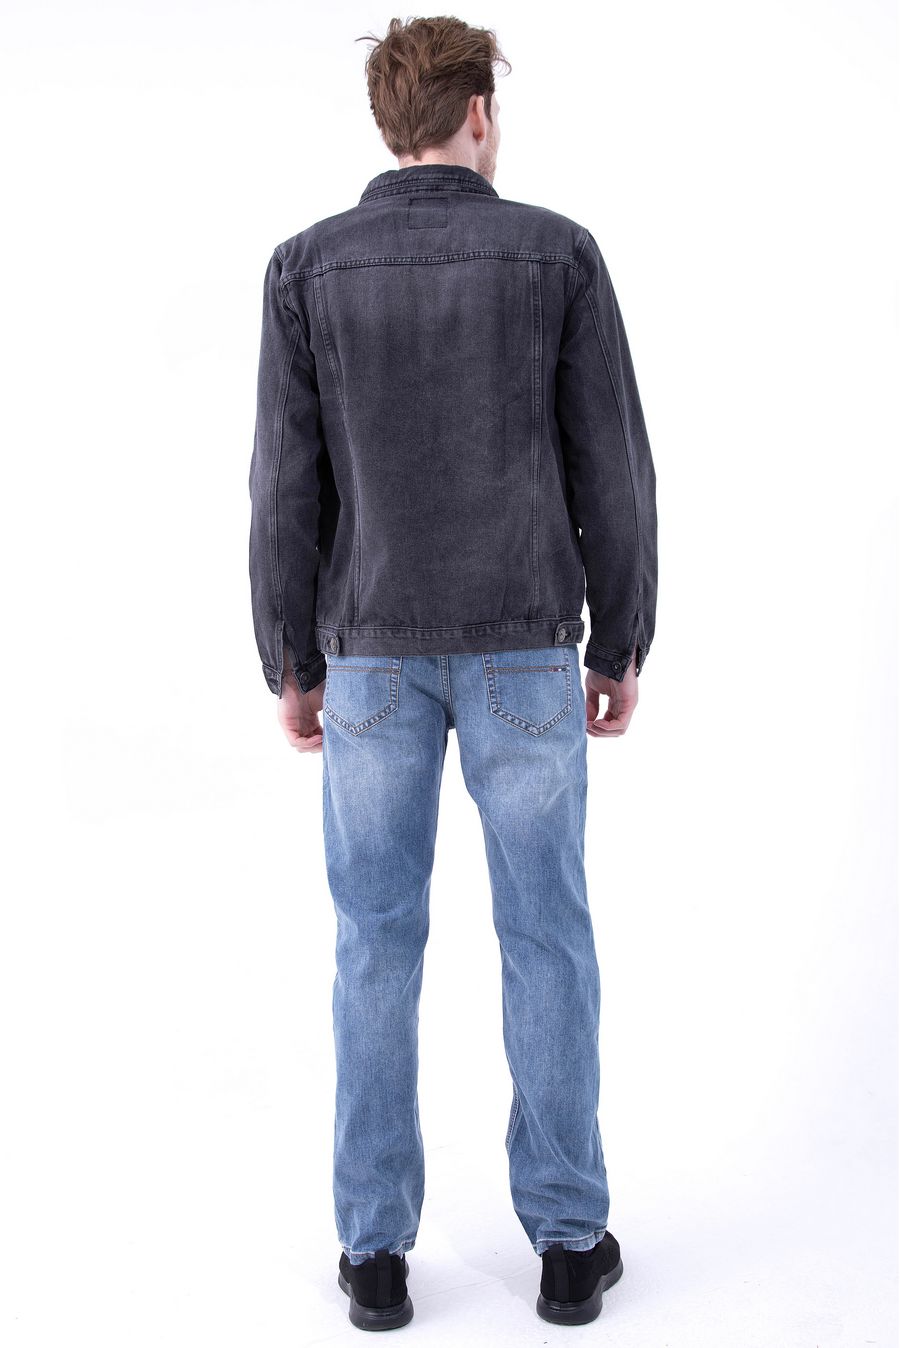 Пиджак мужской (джинсовка) Dervirga`s D1002 - фото 3